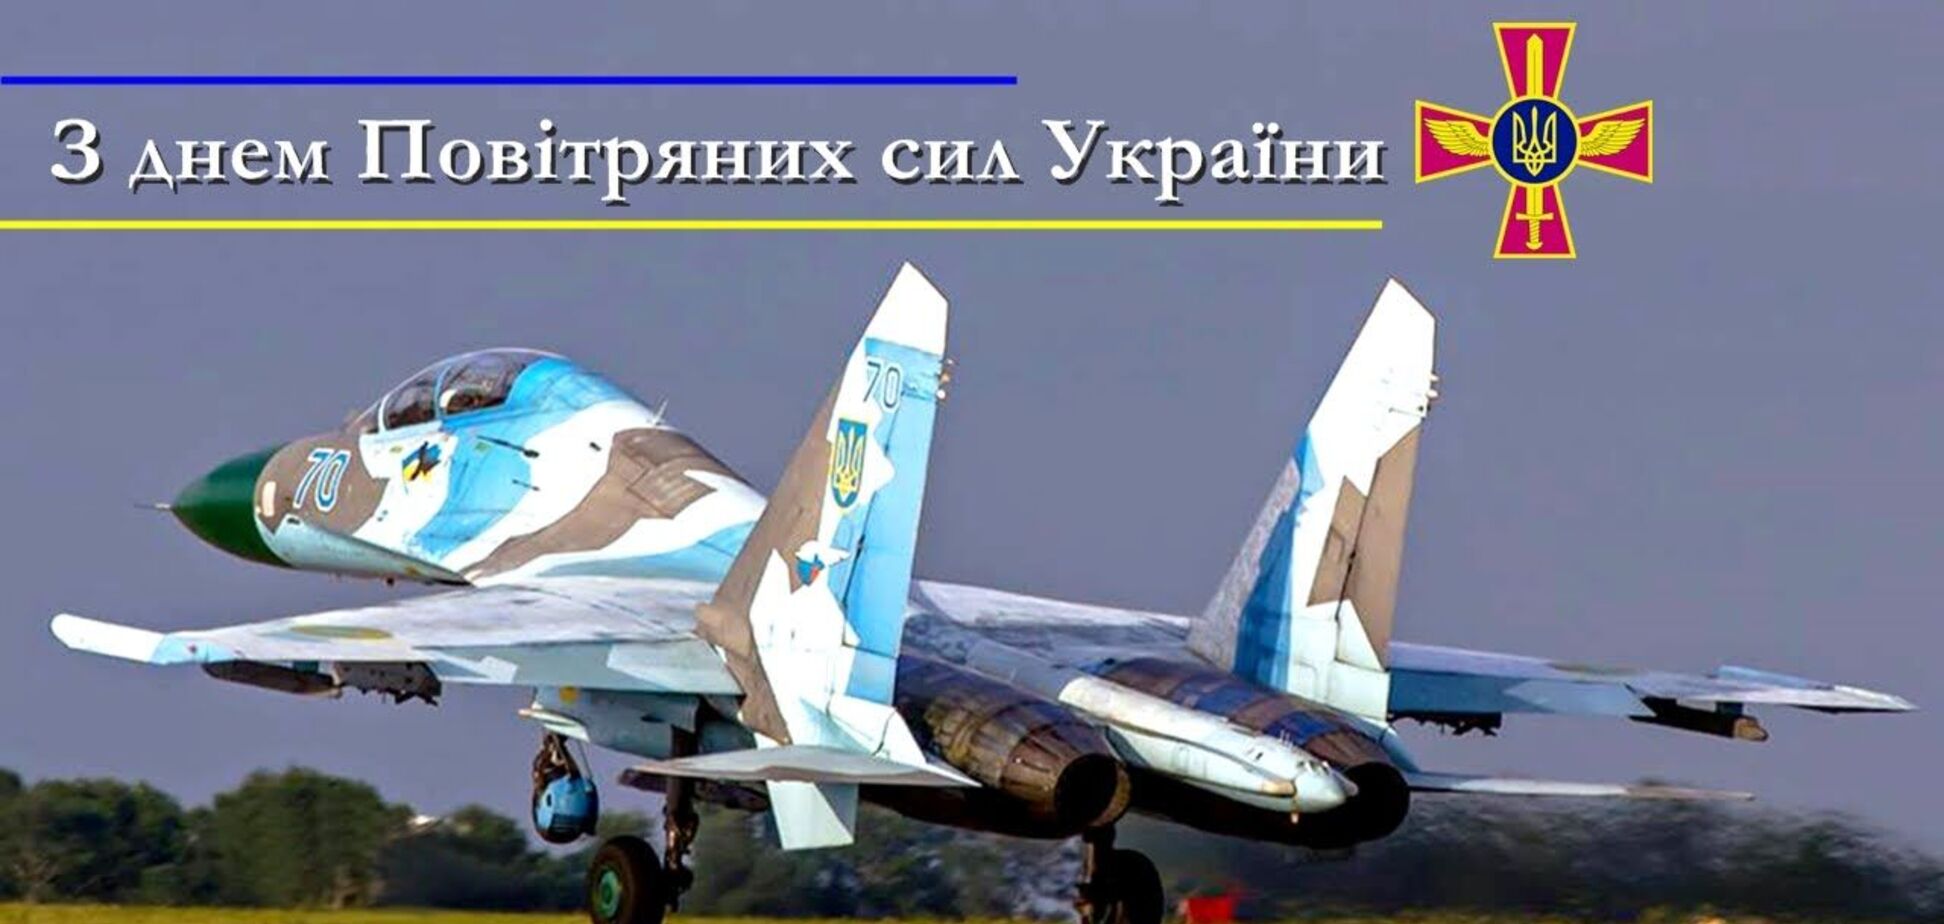 День Воздушных сил Вооруженных сил Украины отмечается ежегодно в первое воскресенье августа